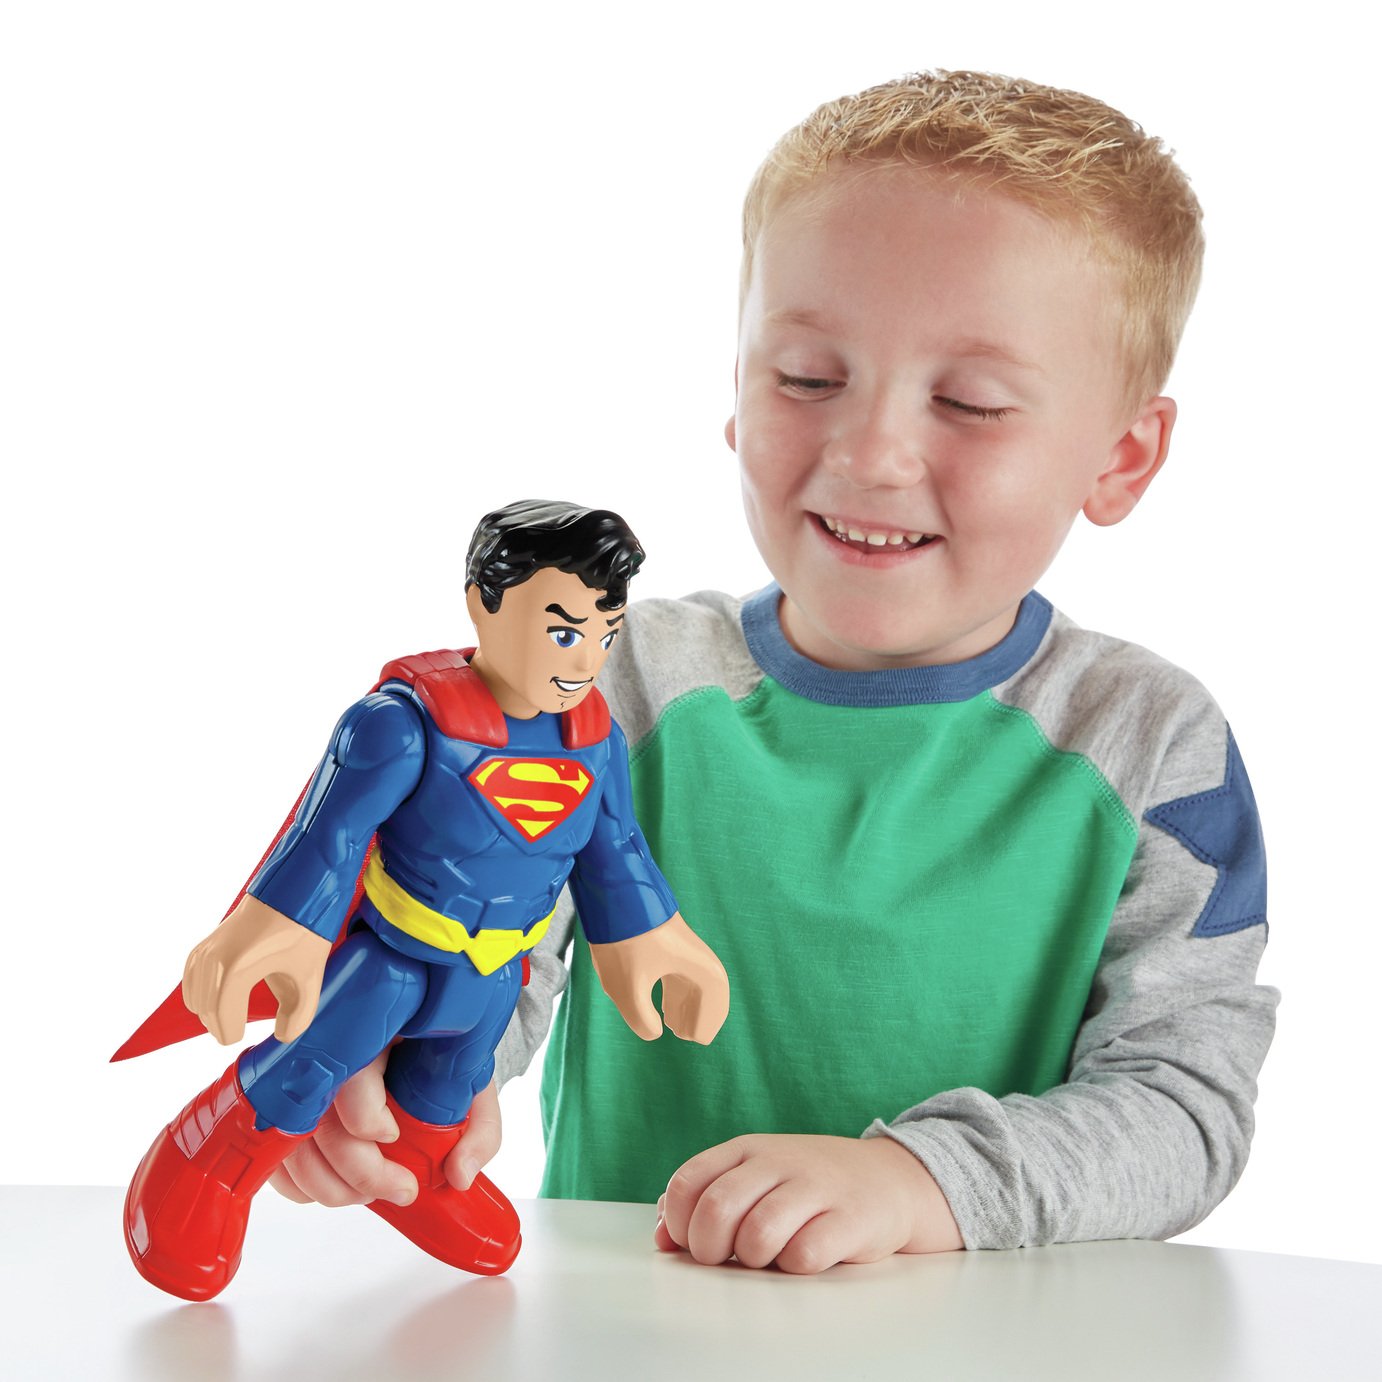 Buy Imaginext DC Super Friends Superman 